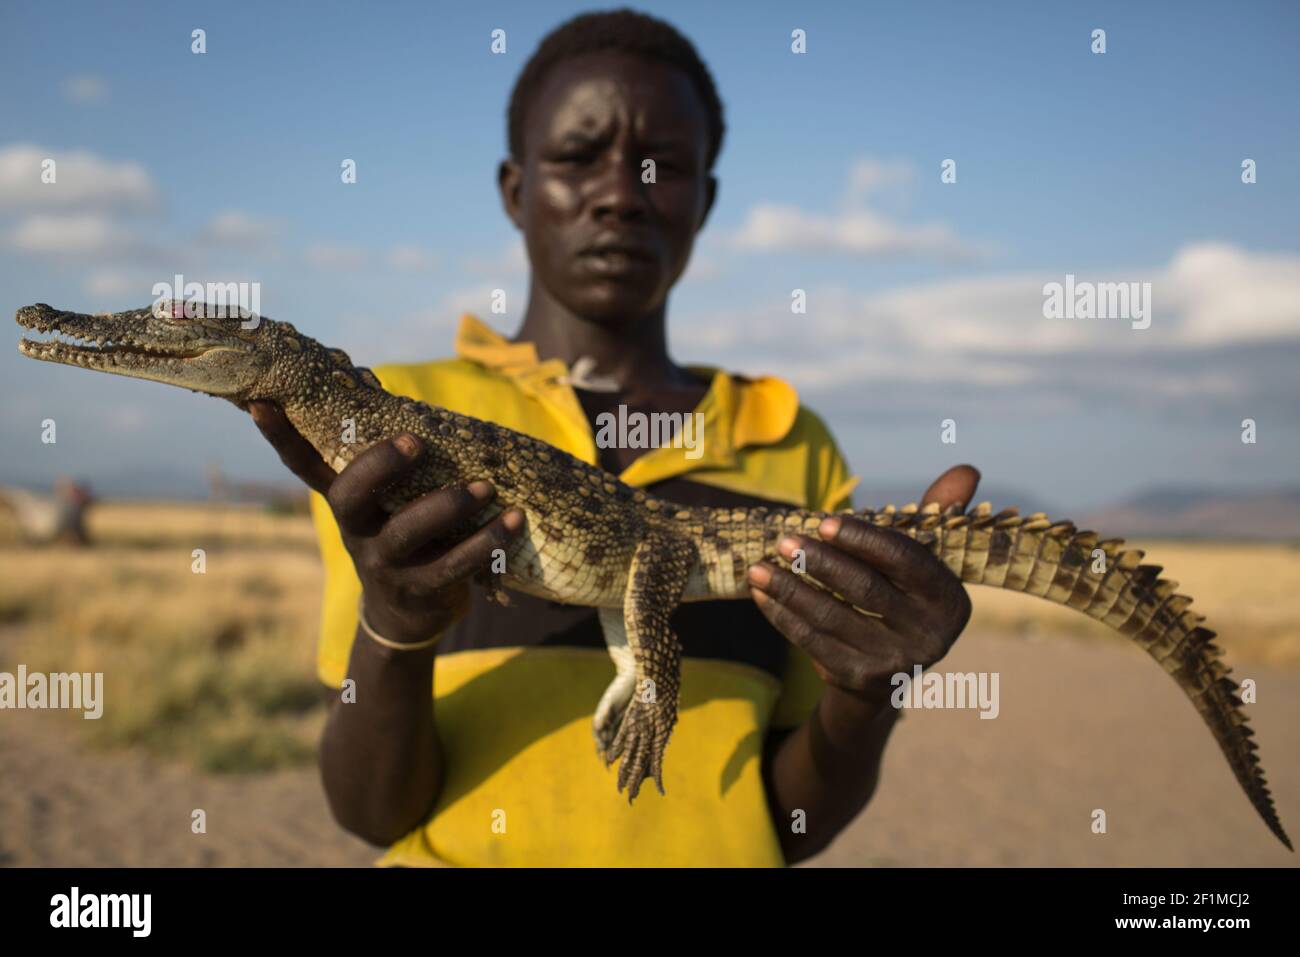 Mann mit Krokodil am Ufer des Sees Turkana, Kenia. Stockfoto